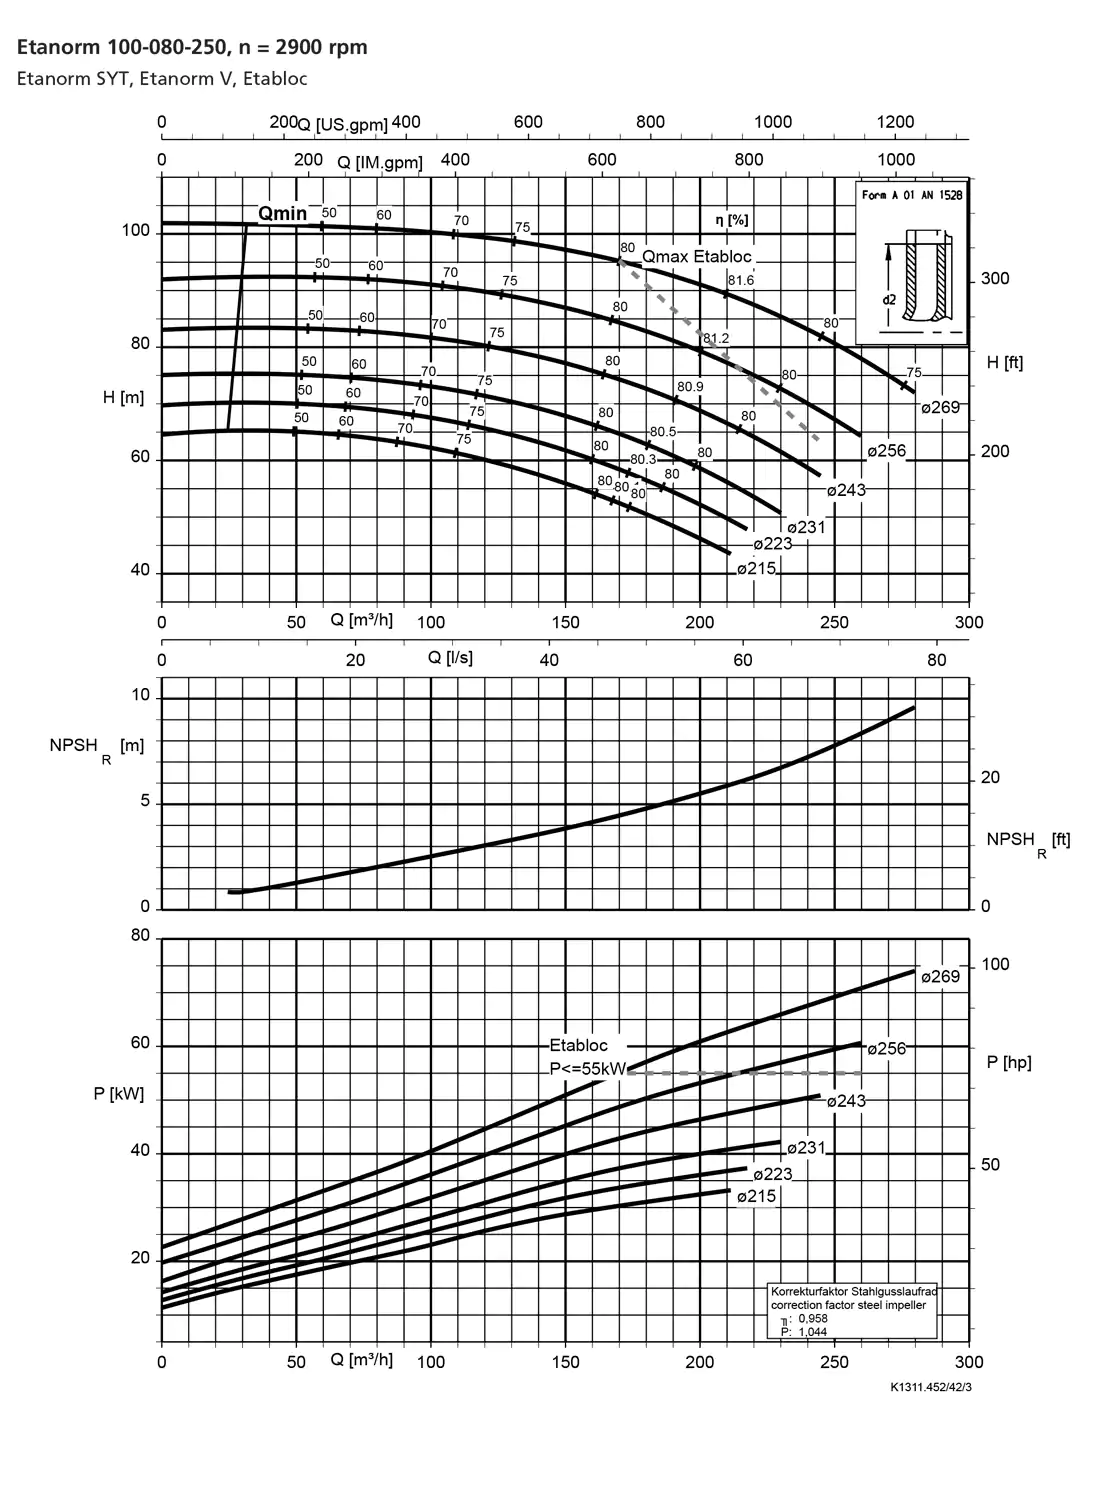 نمودار-کارکرد-پمپ-etanorm-100-80-250-2900